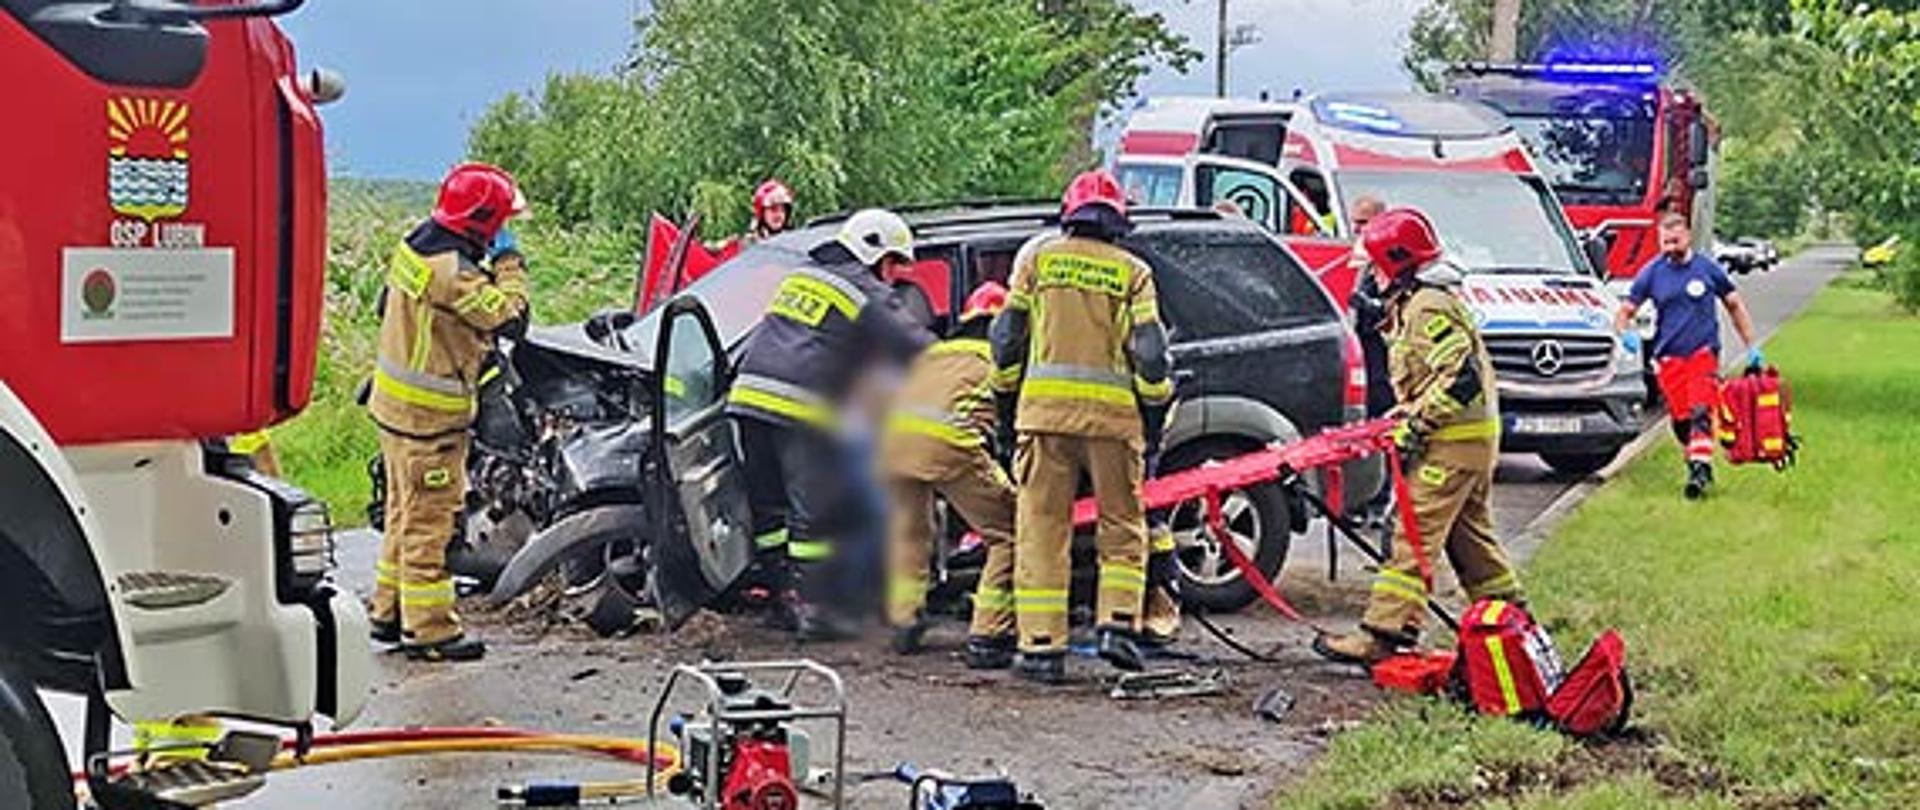 Zdjęcie przedstawia wydostanie poszkodowanej osoby przez strażaków z rozbitego pojazdu który stoi na drodze.